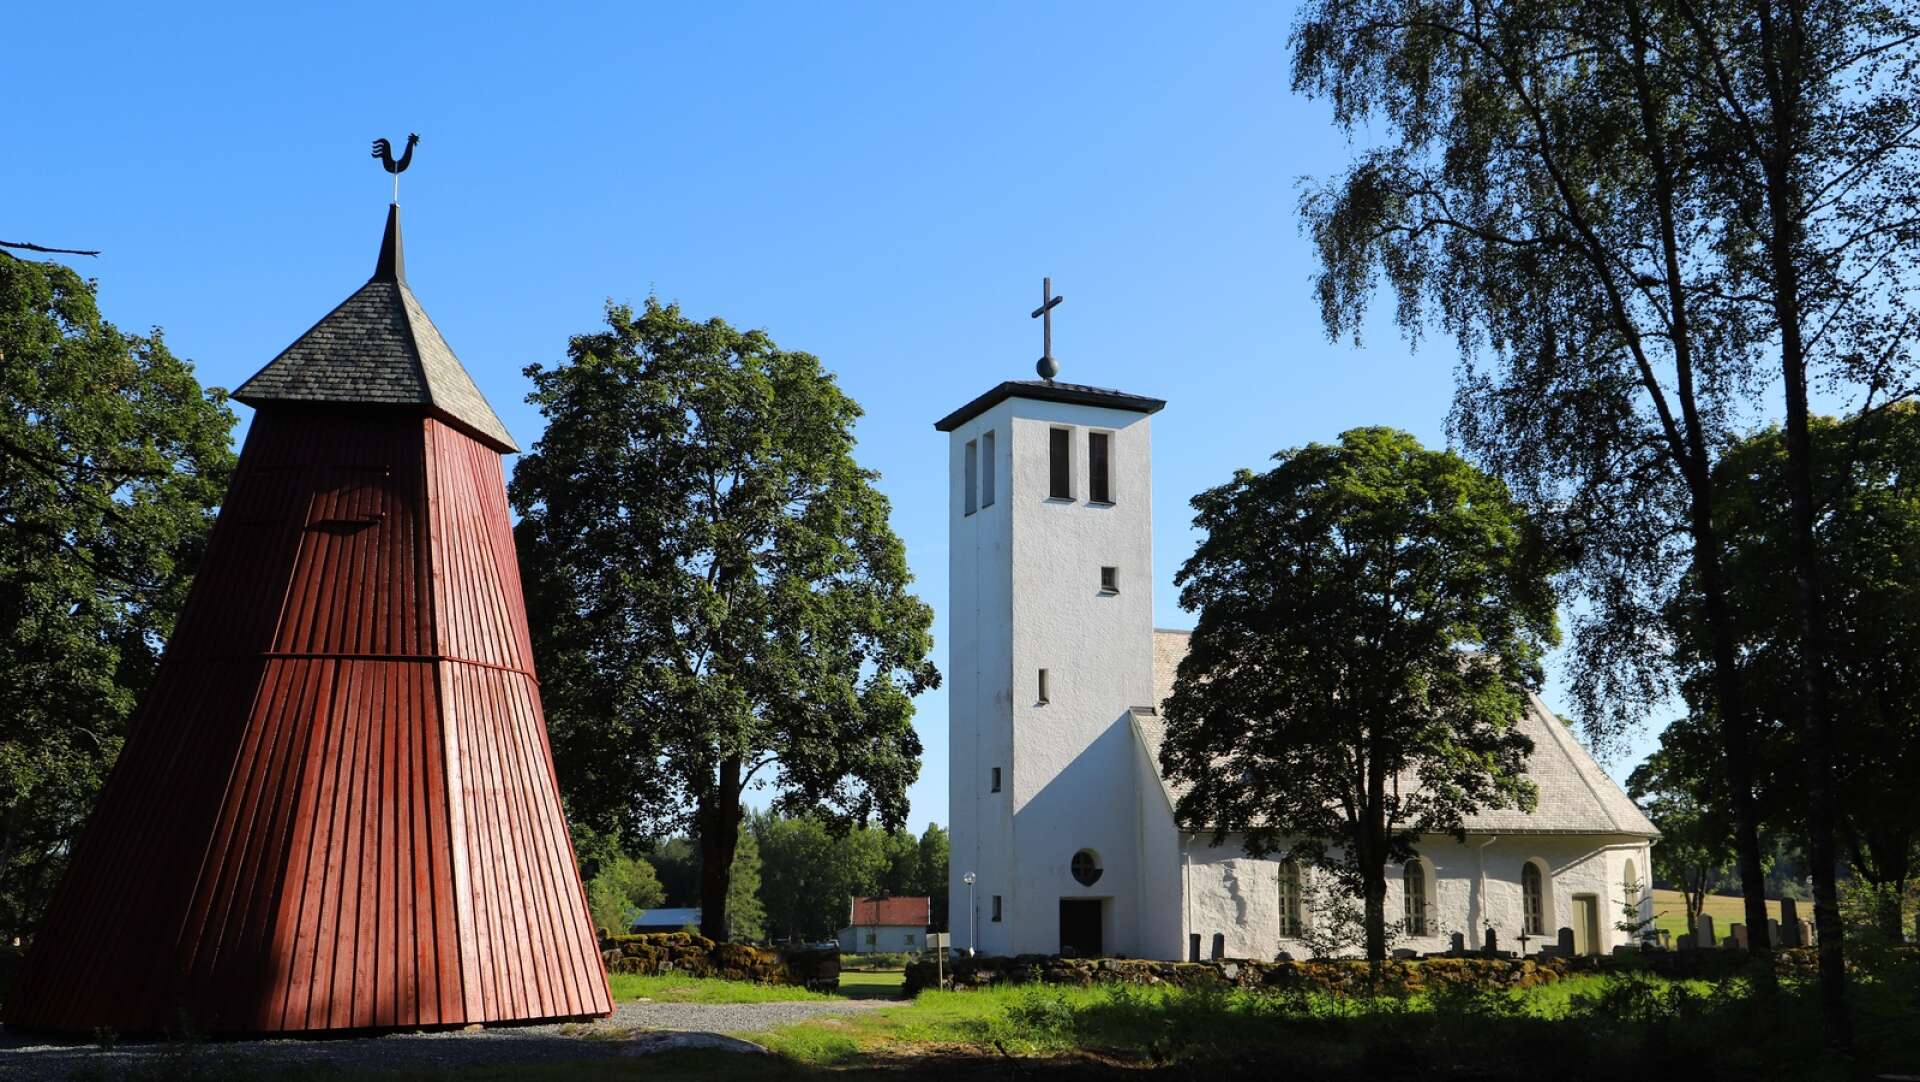 Rölanda medeltida kyrka med klockstapeln från1725 i förgrunden.